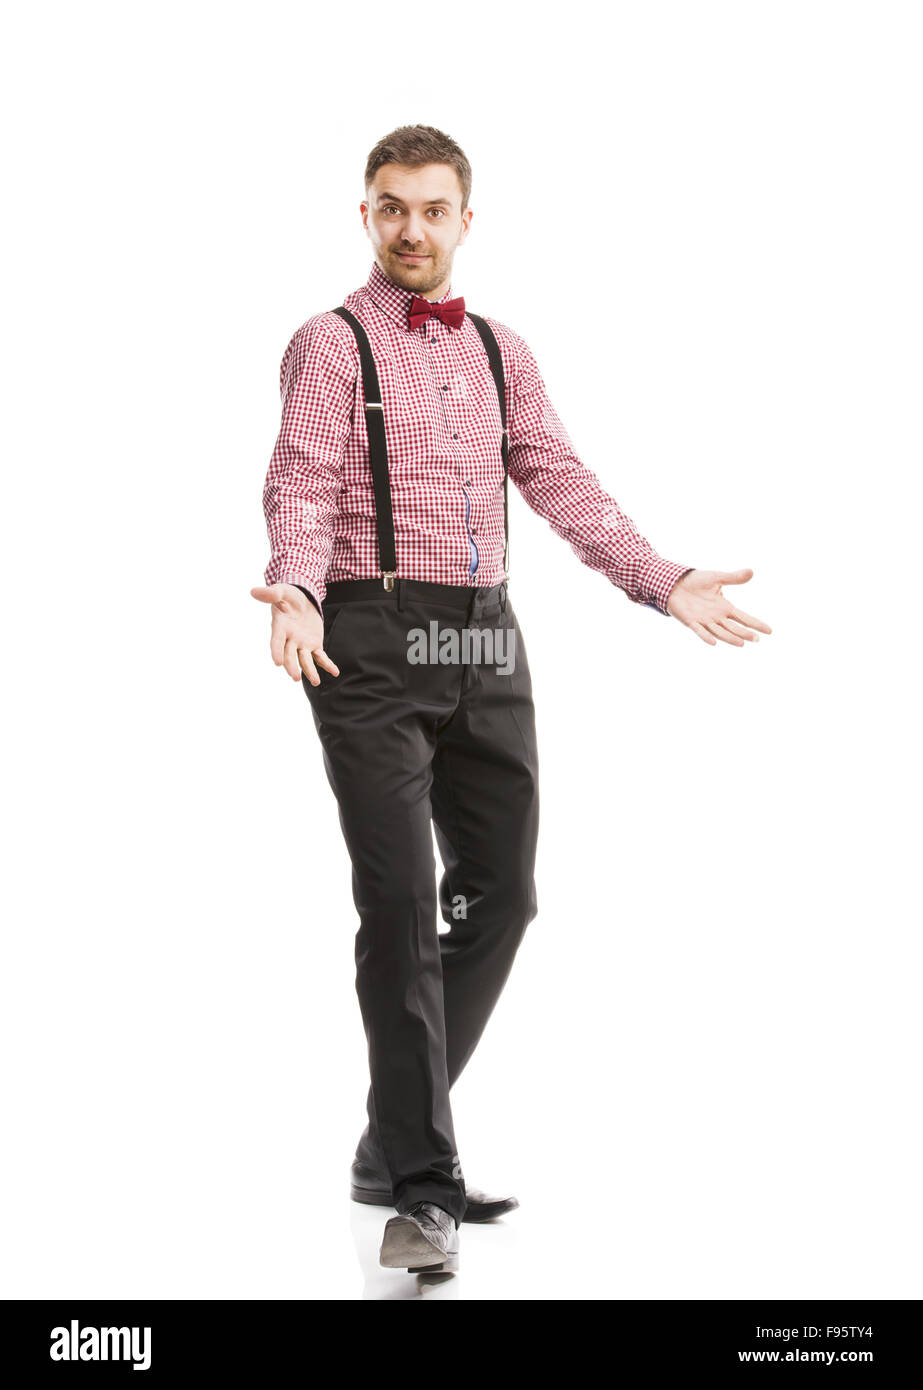 Funny business man è in posa di studio con il filtro bow tie e bretelle  Foto stock - Alamy